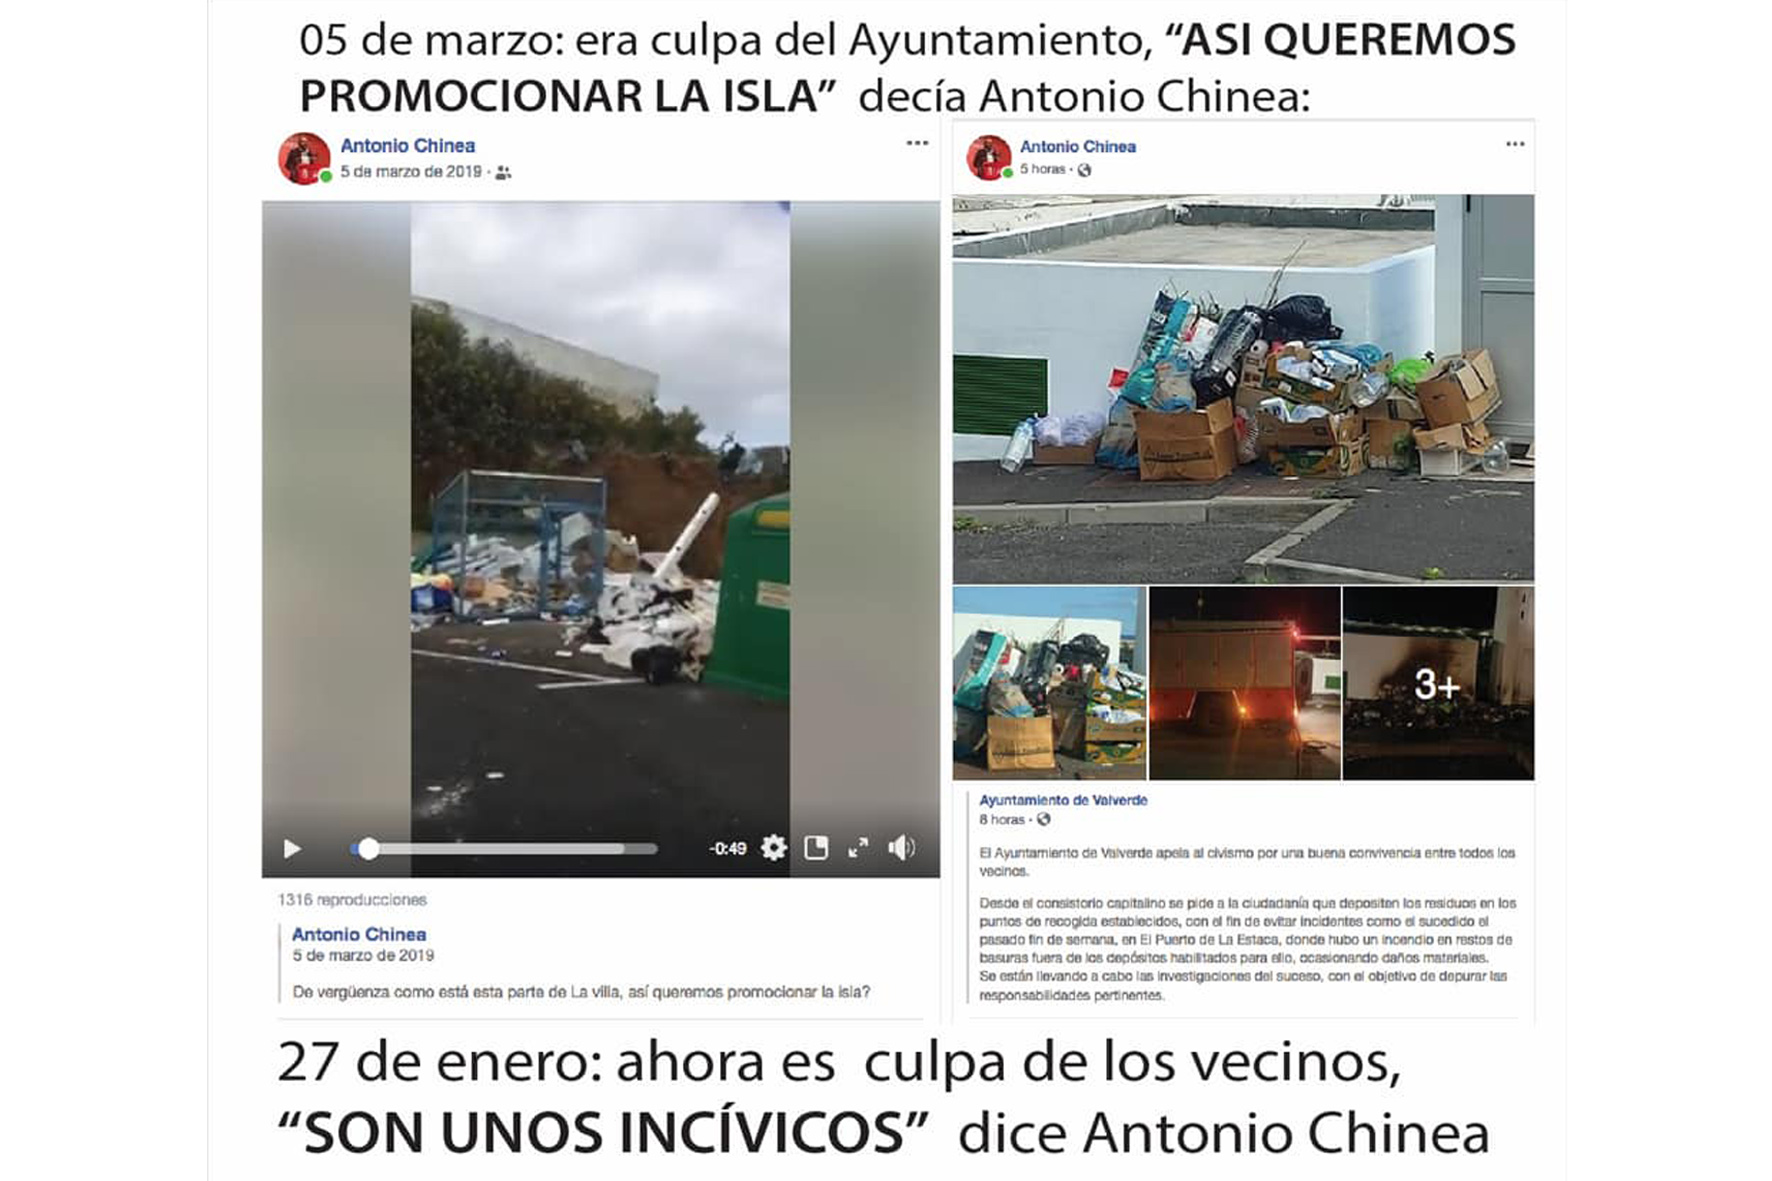 El alcalde de Valverde acusa a la AHI de crear “Fake News” y difamar su persona